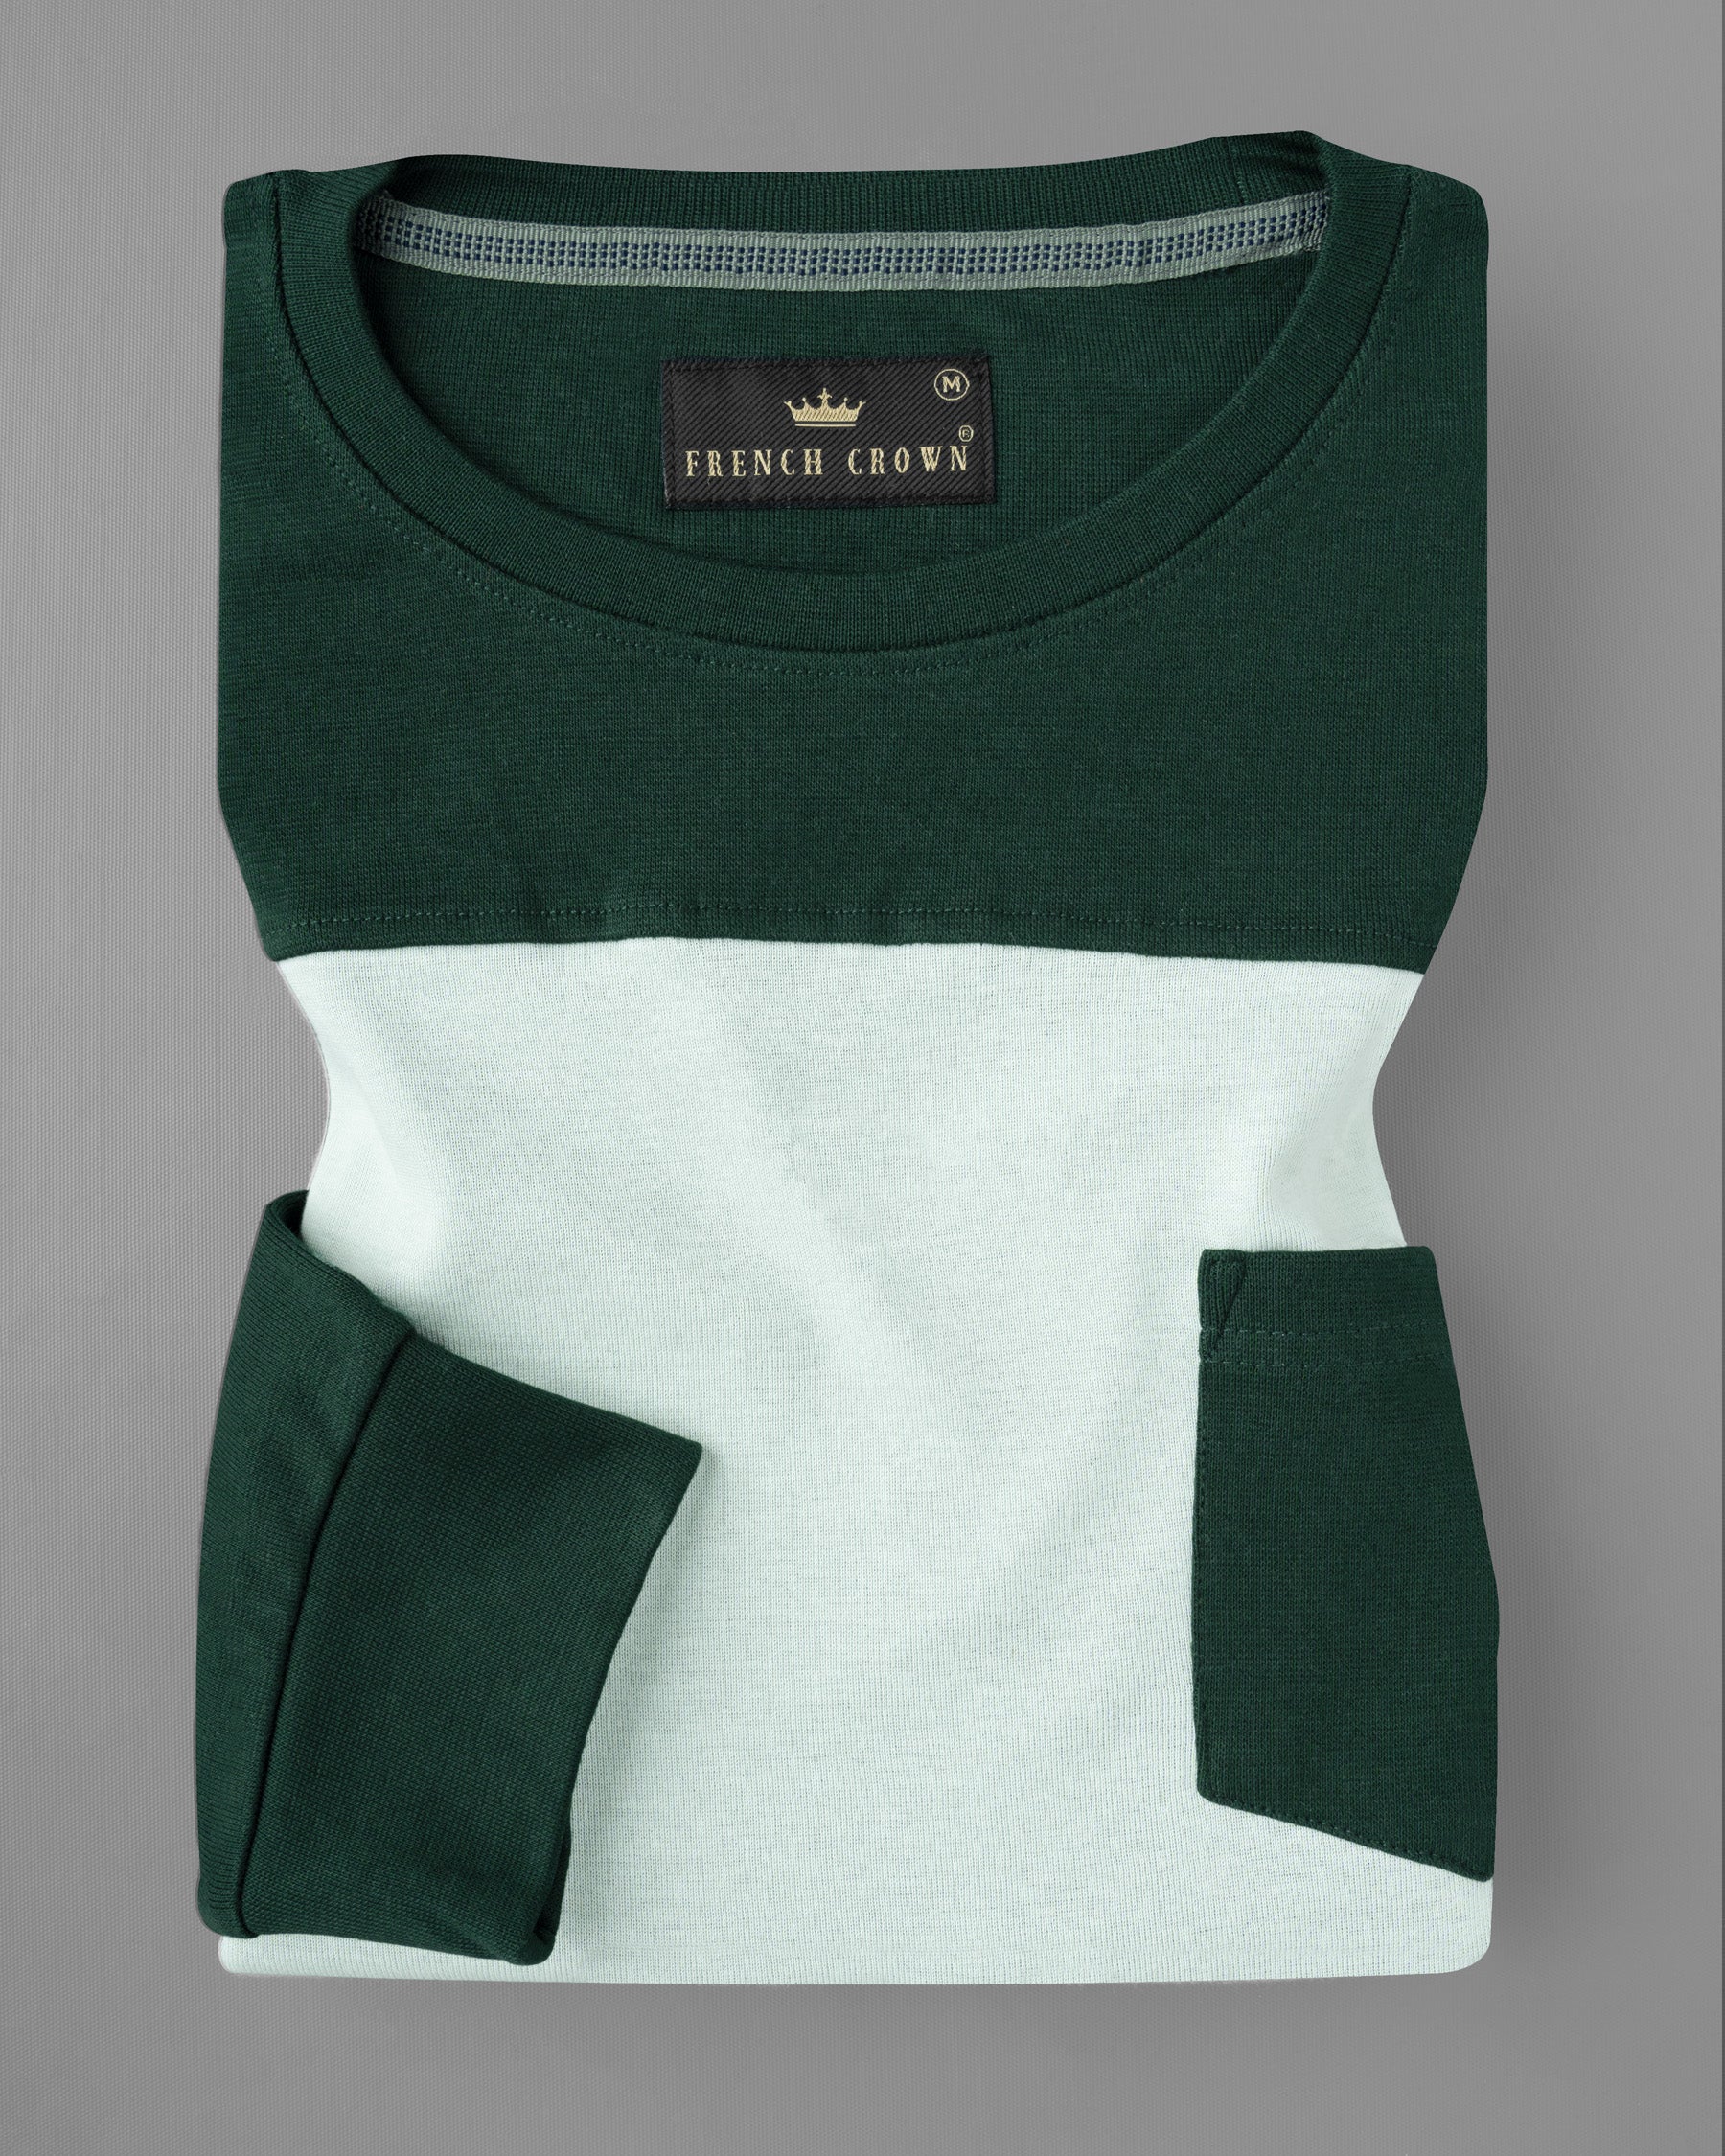 Cardin Green and Geyser Super Soft Premium Jersey Sweatshirt TS514-S, TS514-M, TS514-L, TS514-XL, TS514-XXL